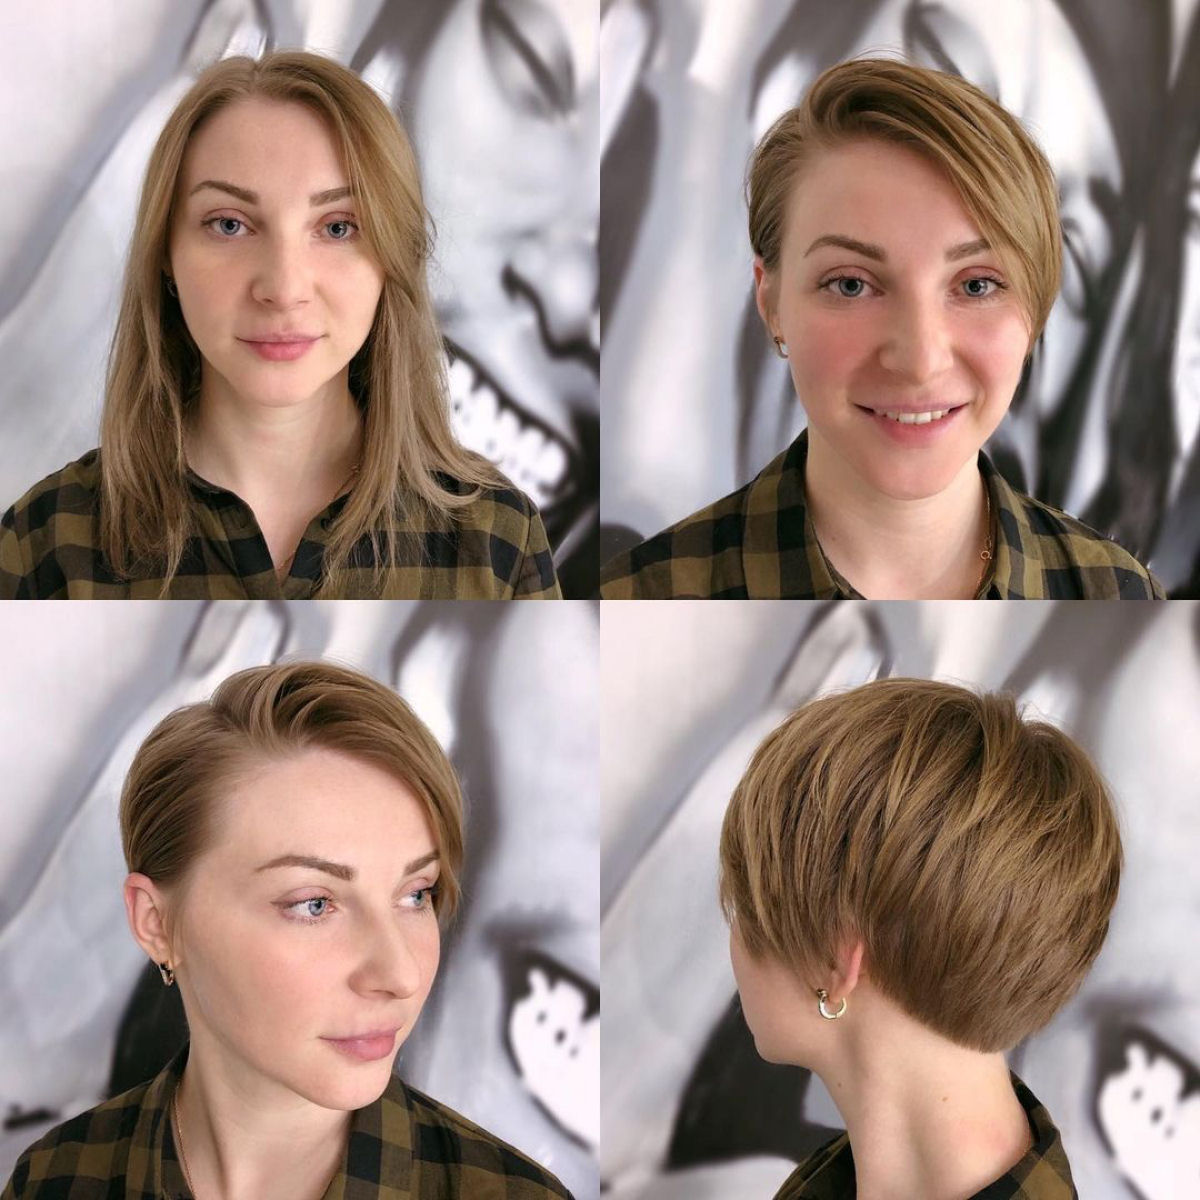 Cabeleireira moscovita demonstra que a beleza não se mede pelo comprimento do cabelo 06